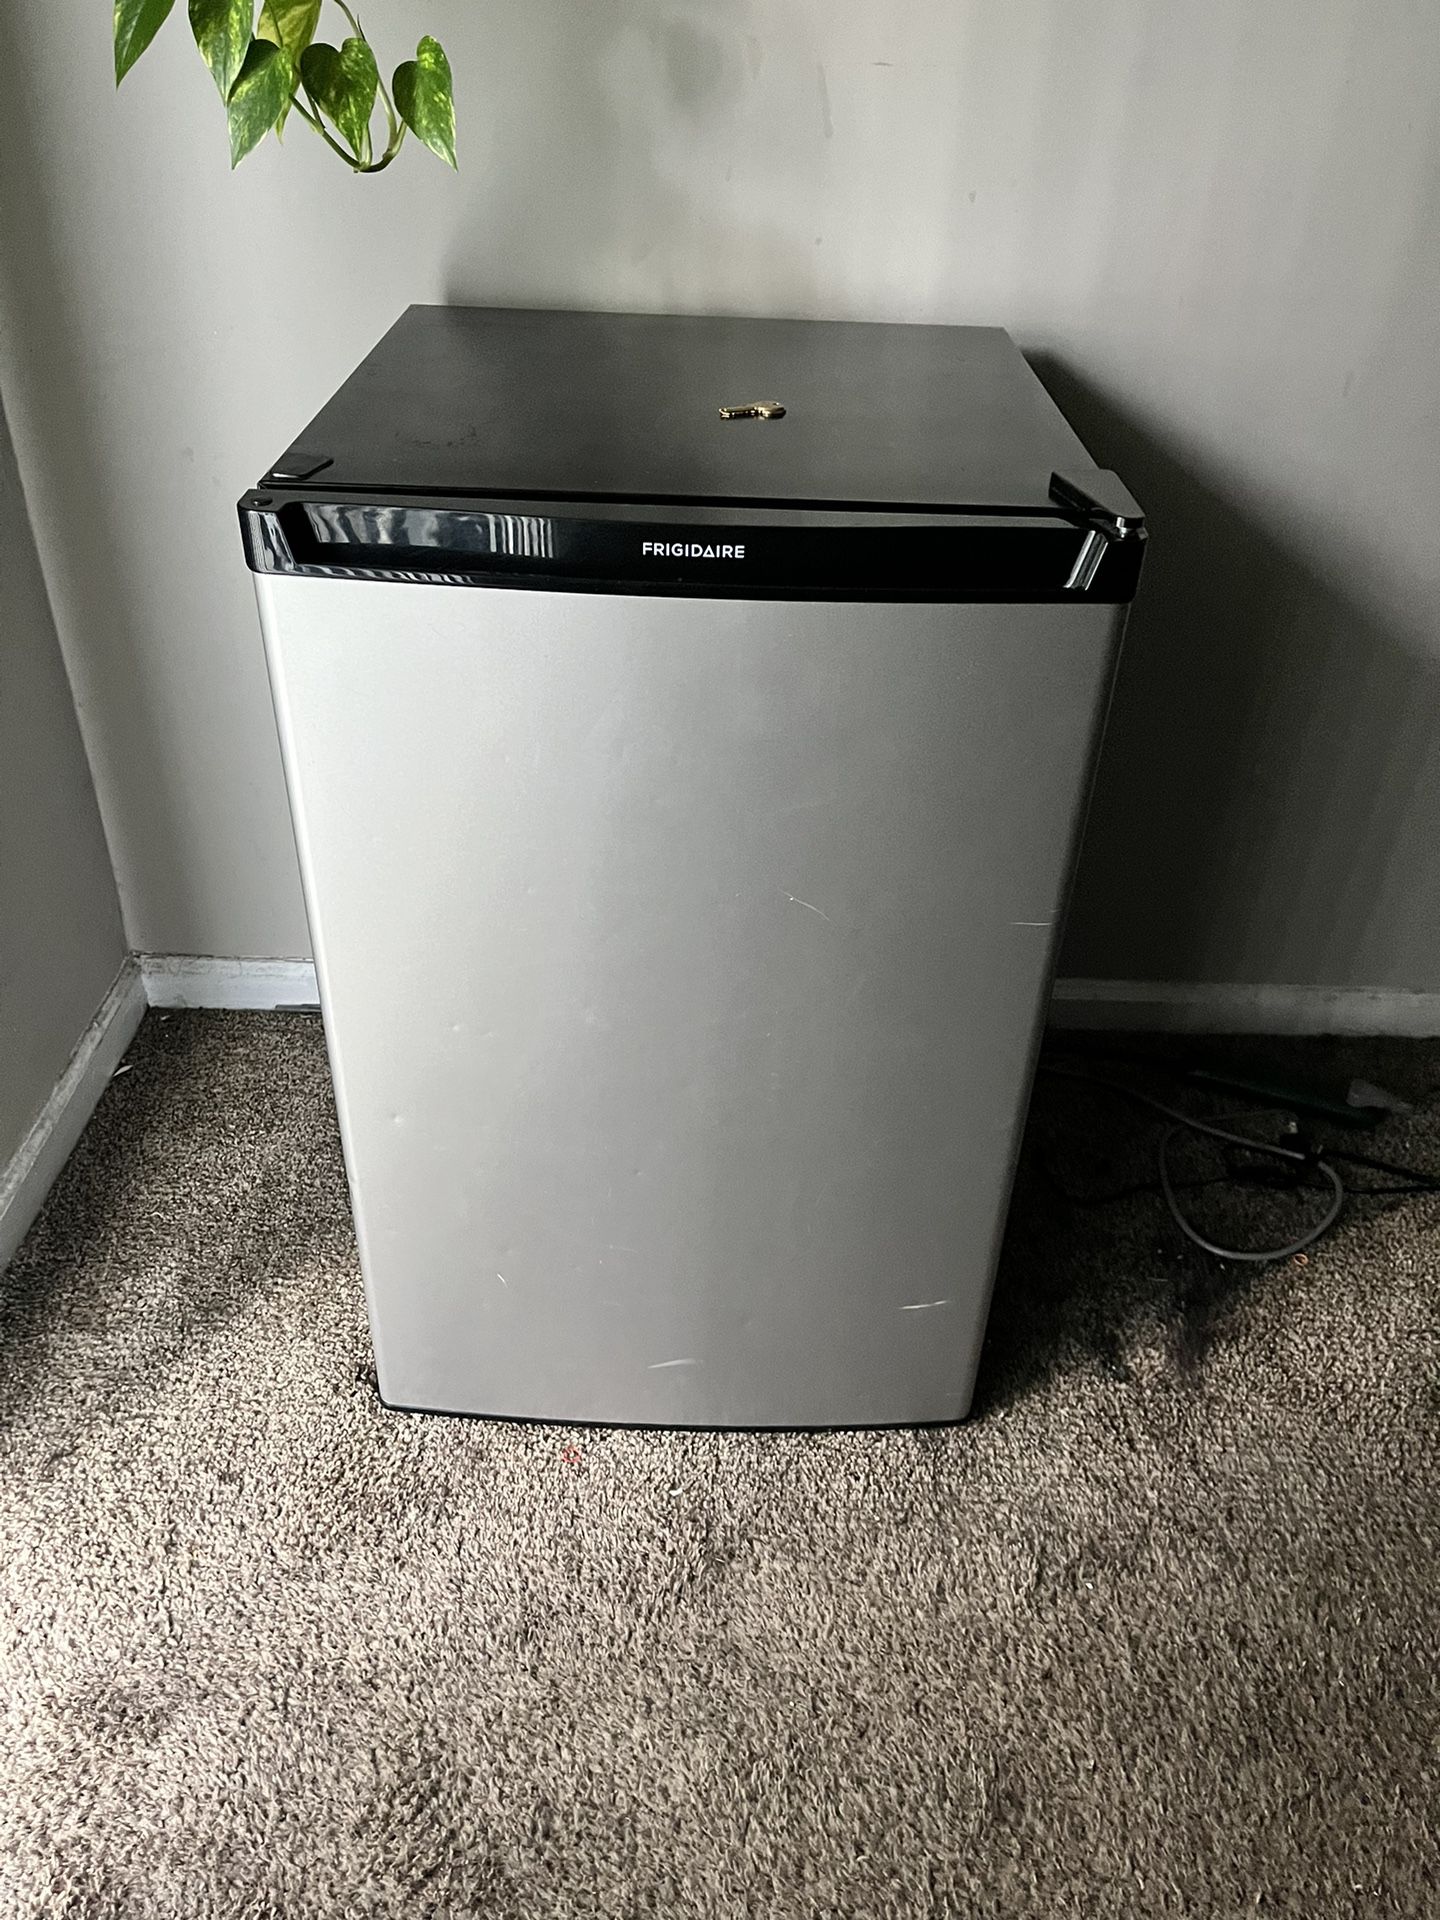 Frigidaire Compact Refrigerator With Freezer Box